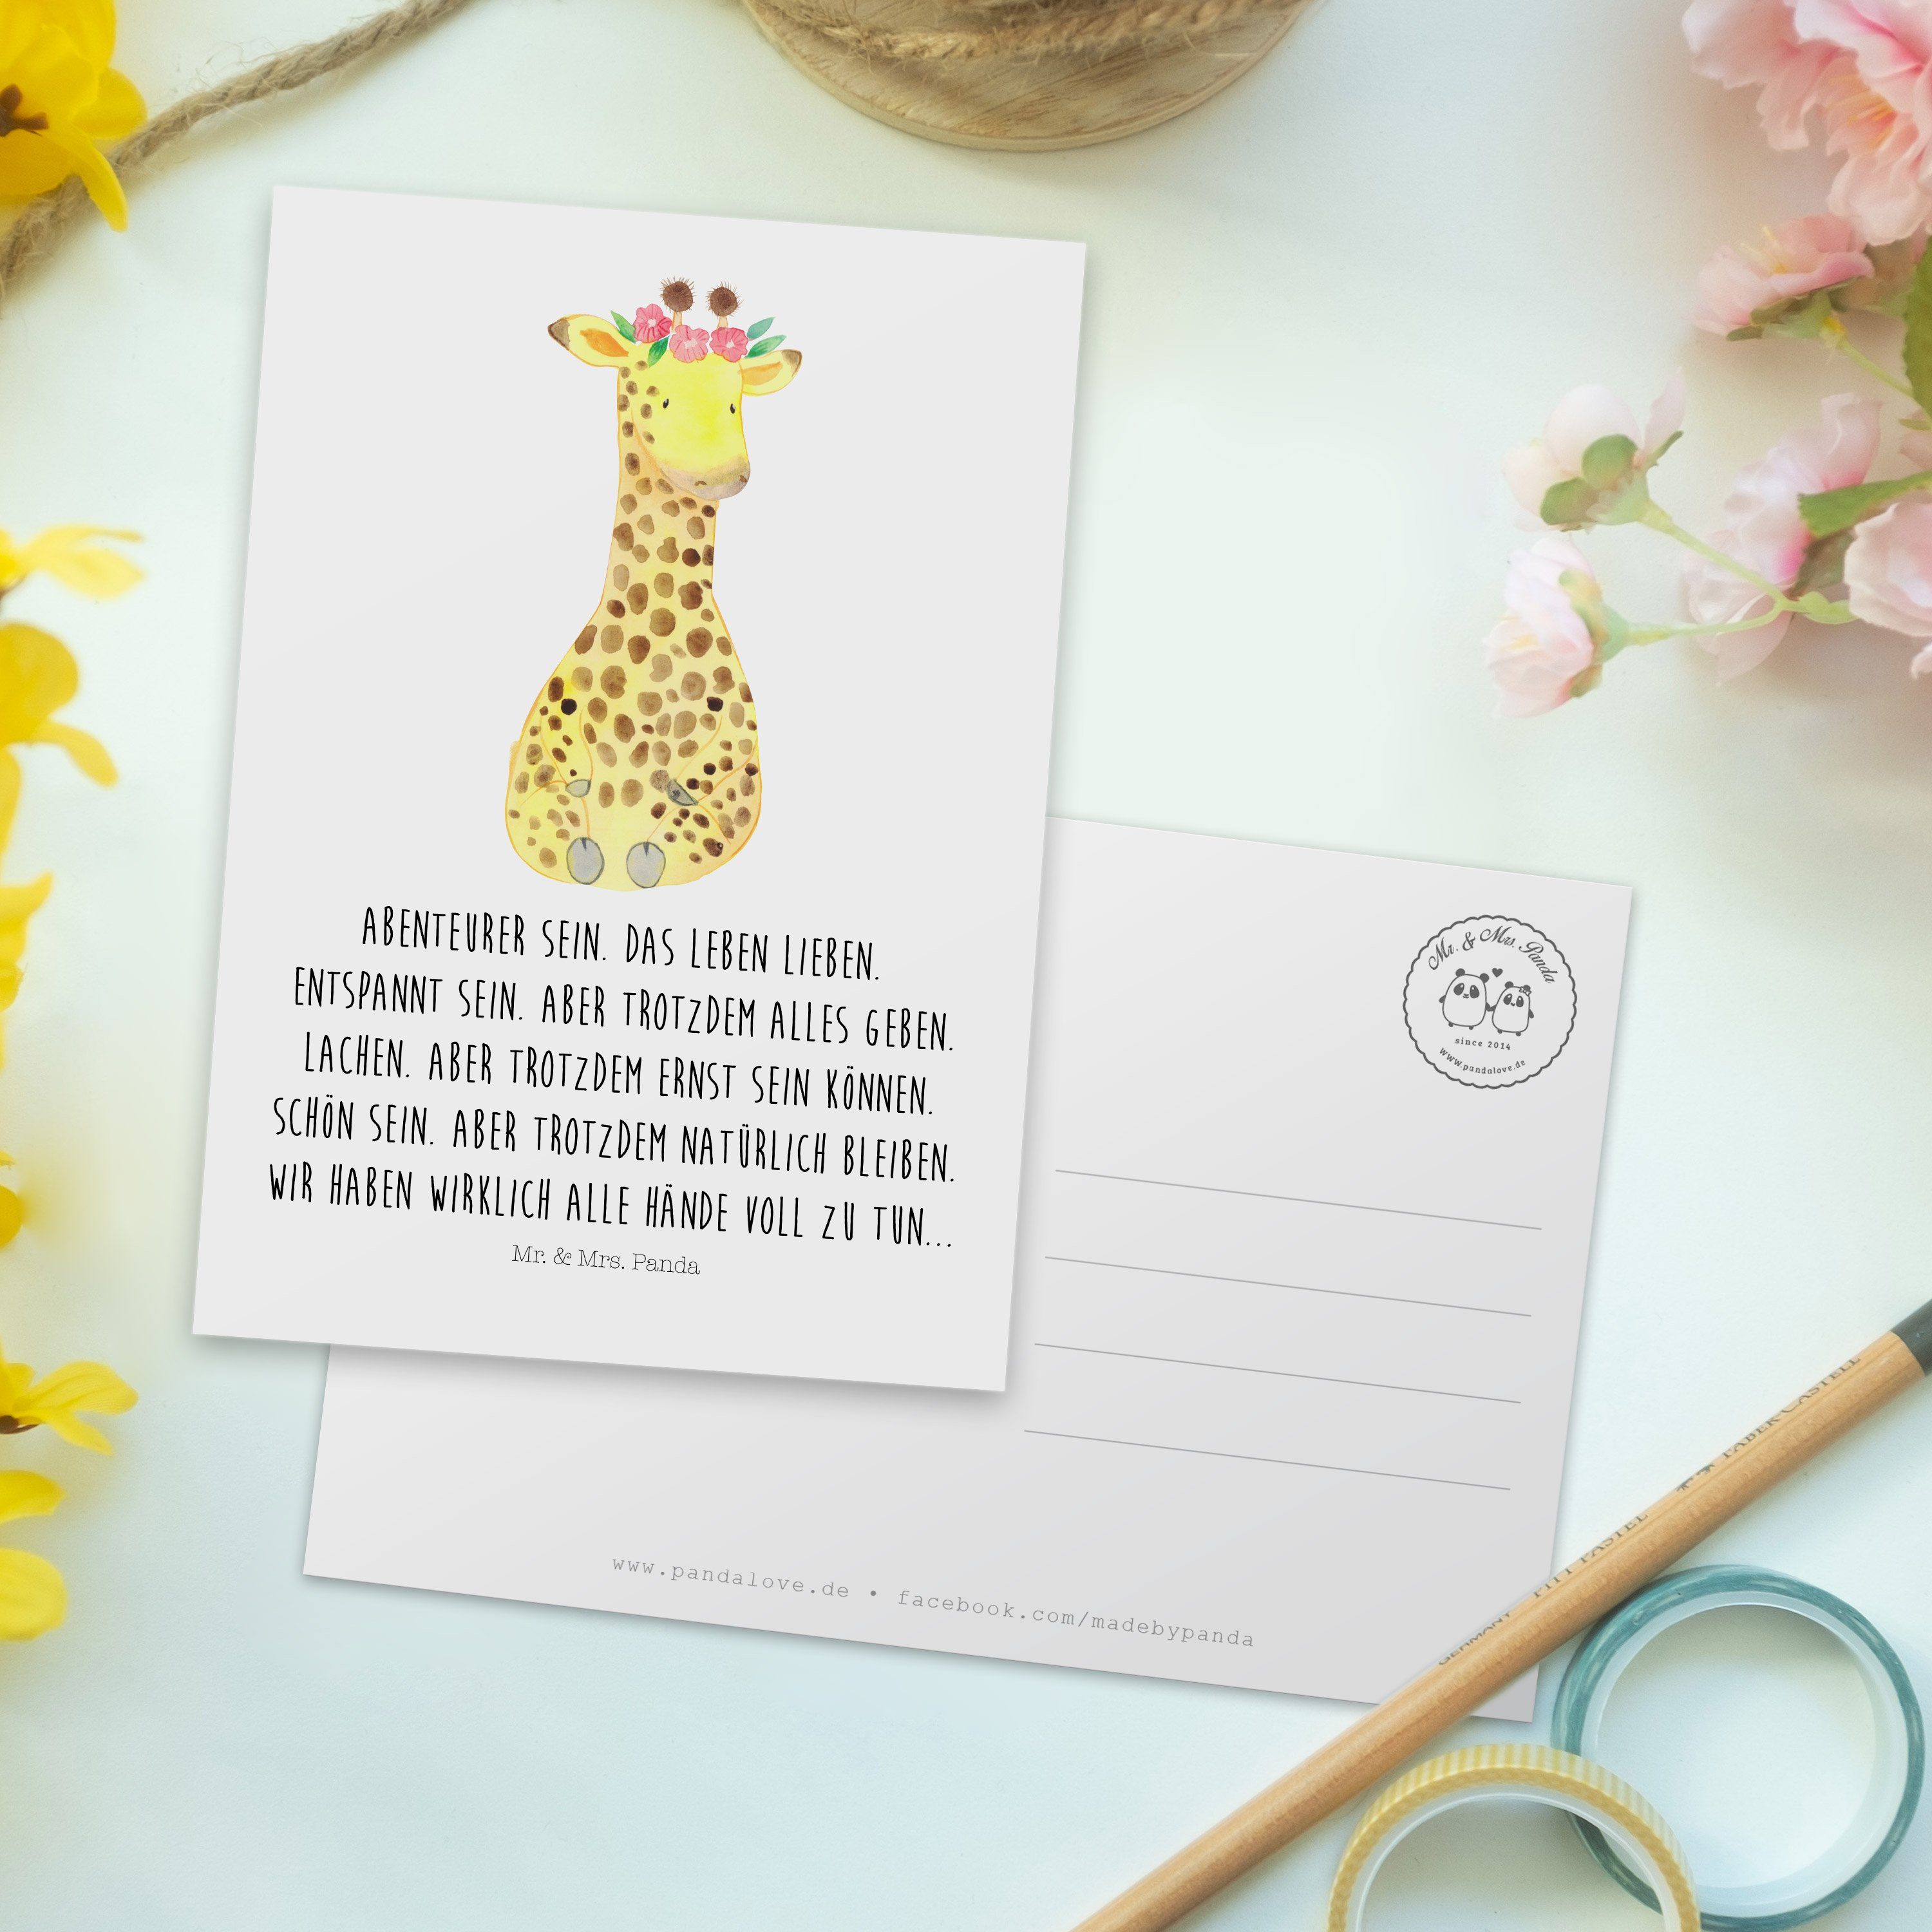 Wildtiere, & Weiß Postkarte Giraffe Panda - Mrs. Mr. Geschenk, Freundin, Einladung Blumenkranz -